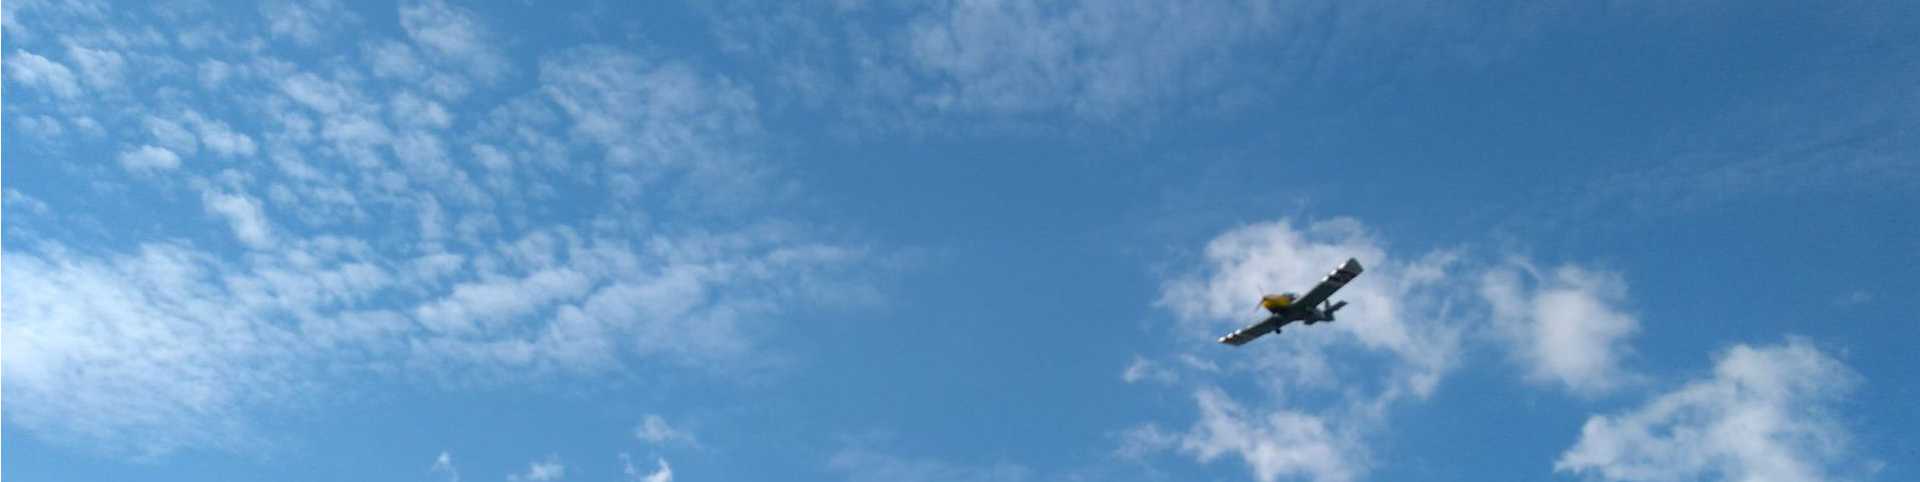 samolot na niebie podczas inscenizacji bitwy o Wielkią Wieś